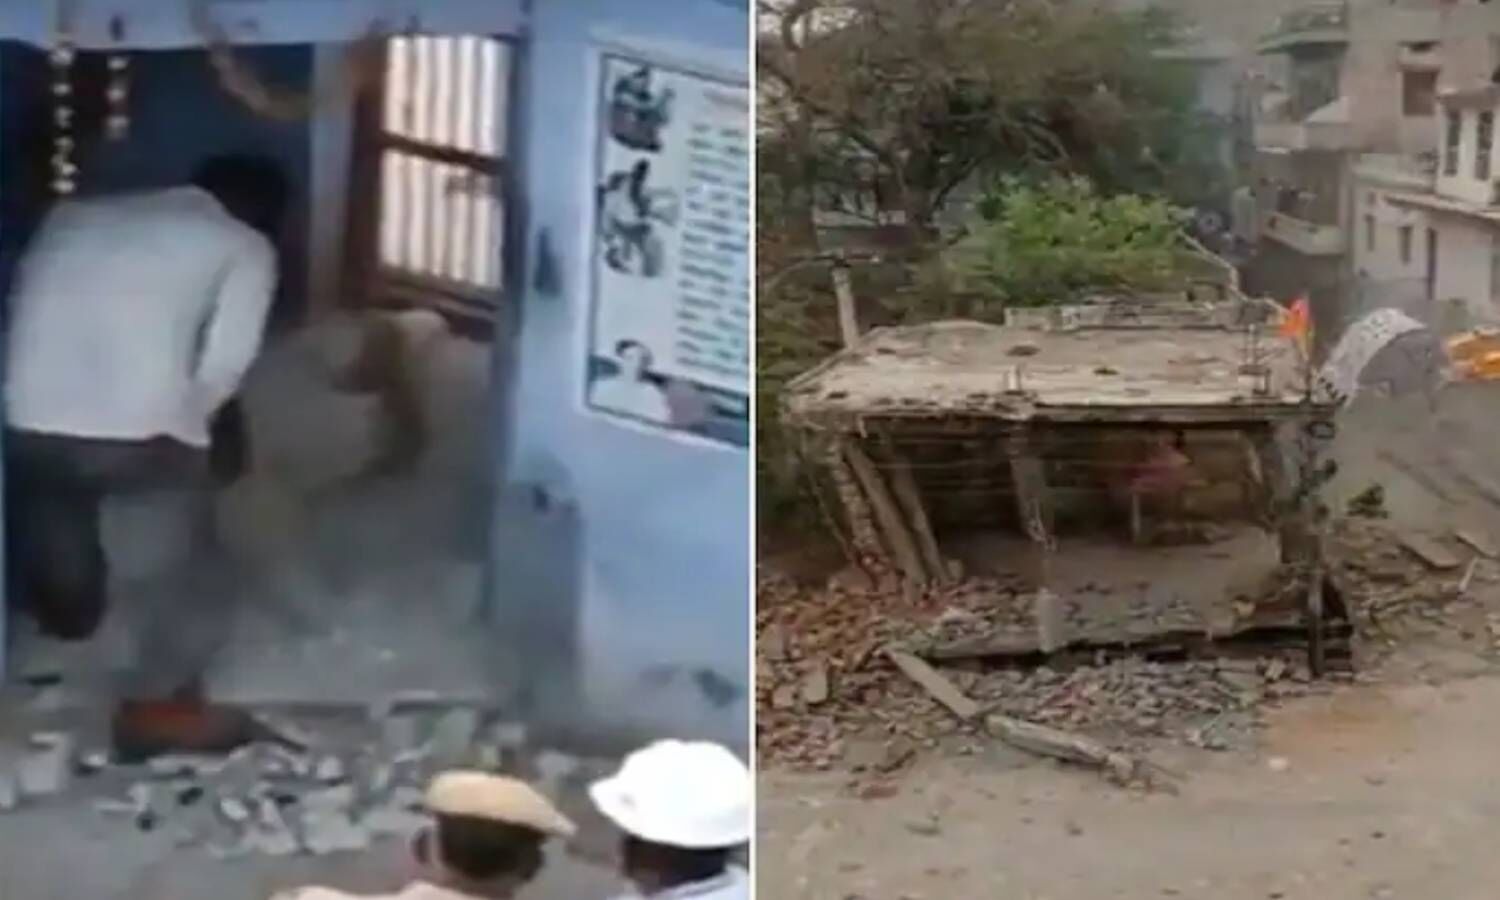 Rajasthan Bulldozer News : अब राजस्थान में 300 साल पुराने मंदिर पर चला बुल्डोजर! (Image Captured from Video)